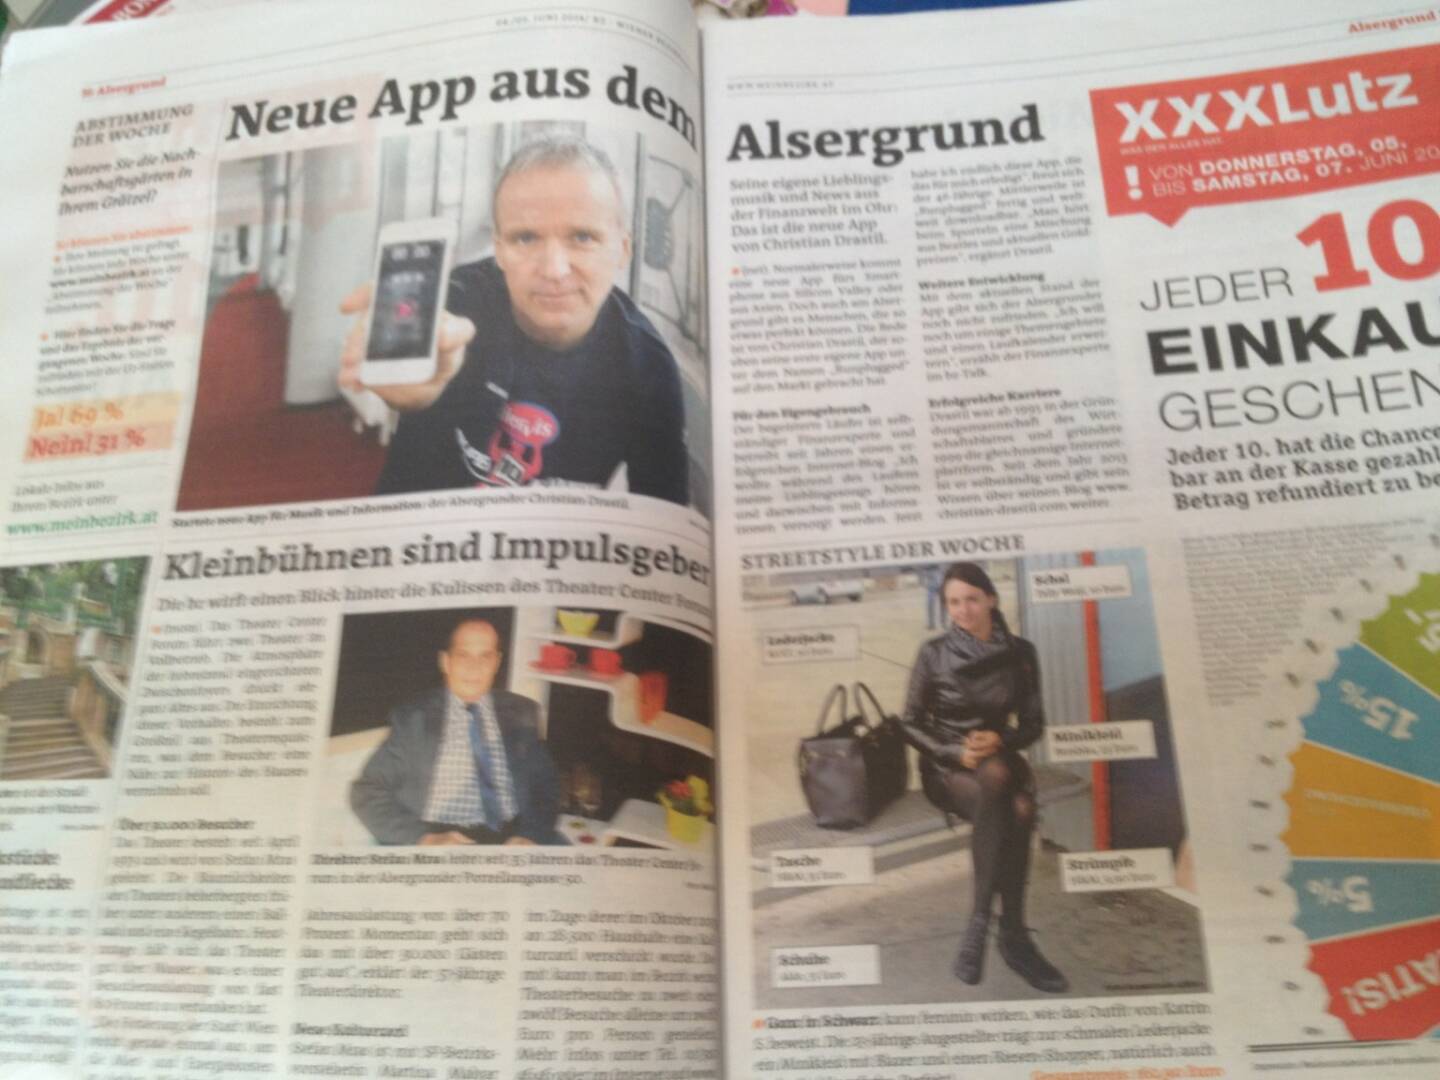 Runplugged in der Bezirkszeitung Alsergrund, Ausgabe 23/2014 , siehe http://www.meinbezirk.at/wien-09-alsergrund/chronik/neue-app-aus-dem-alsergrund-d970275.html